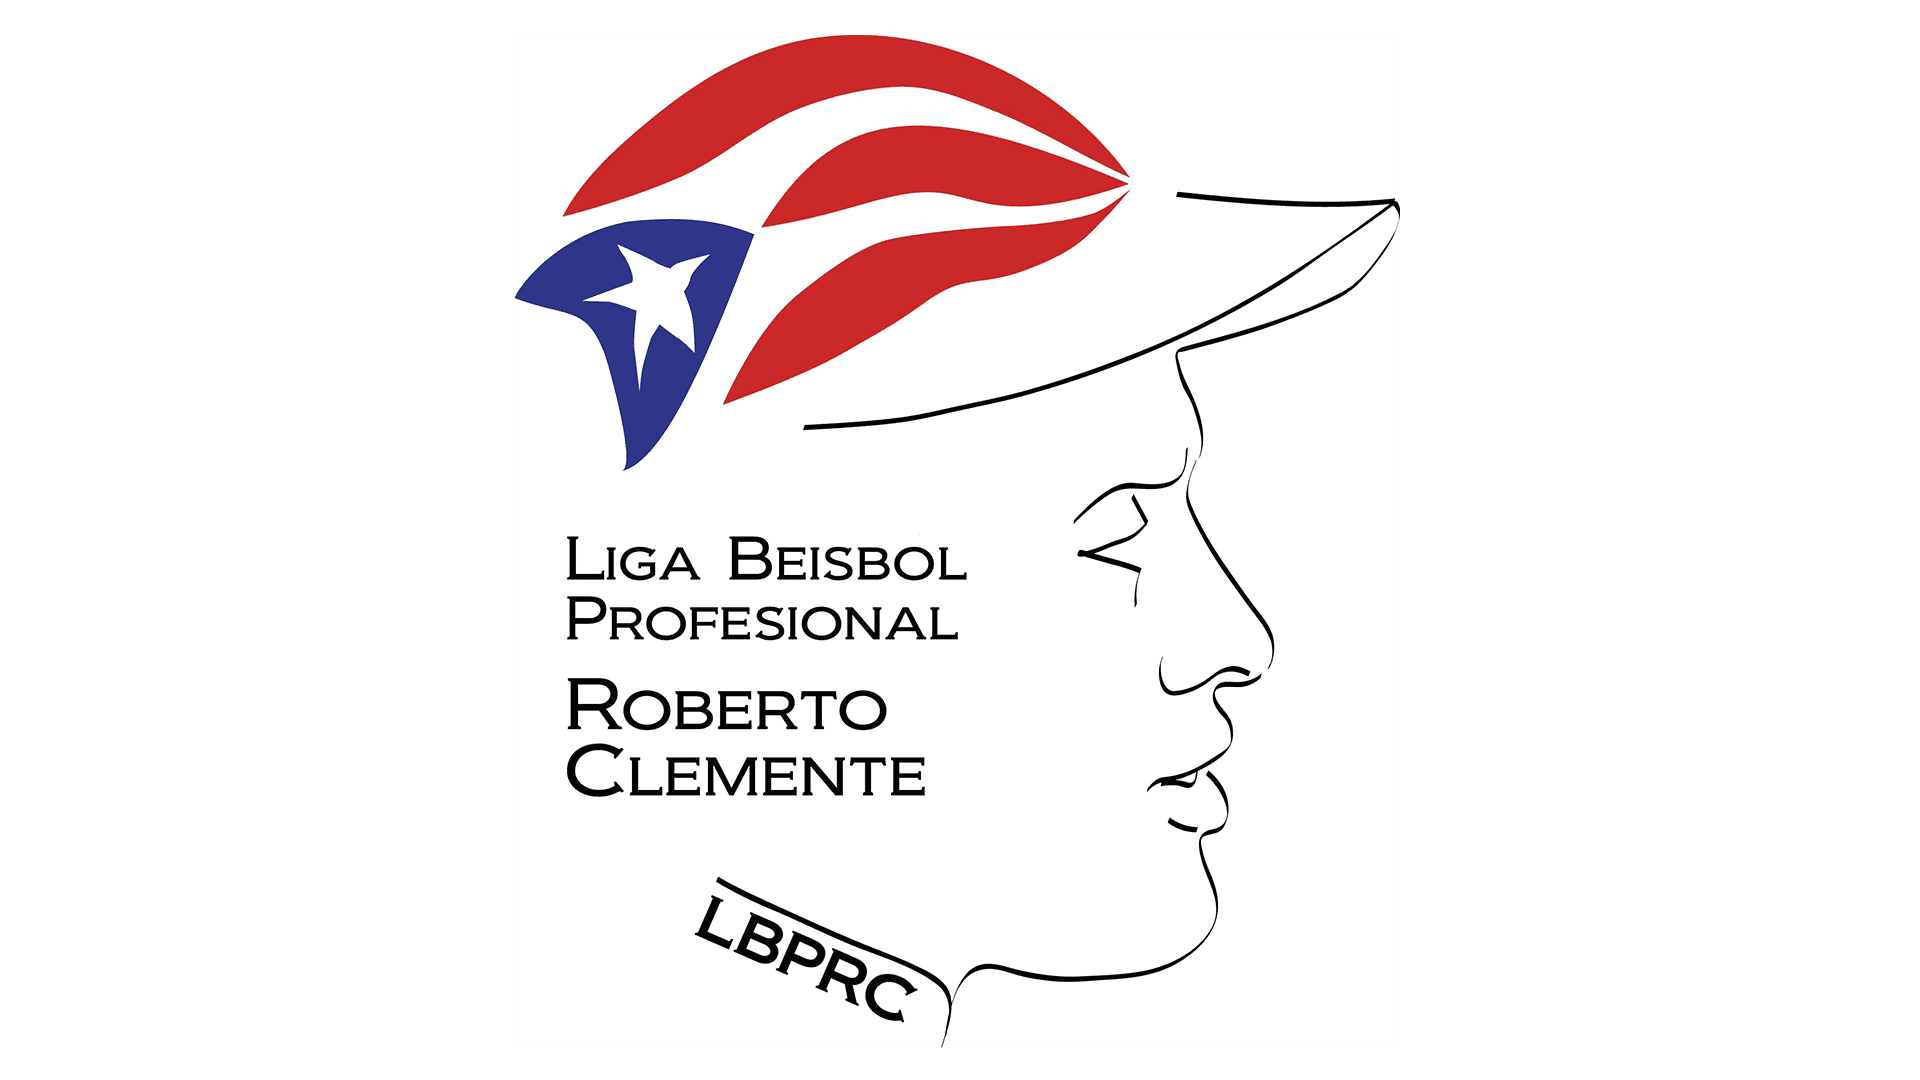 Liga de Béisbol Profesional Roberto Clemente